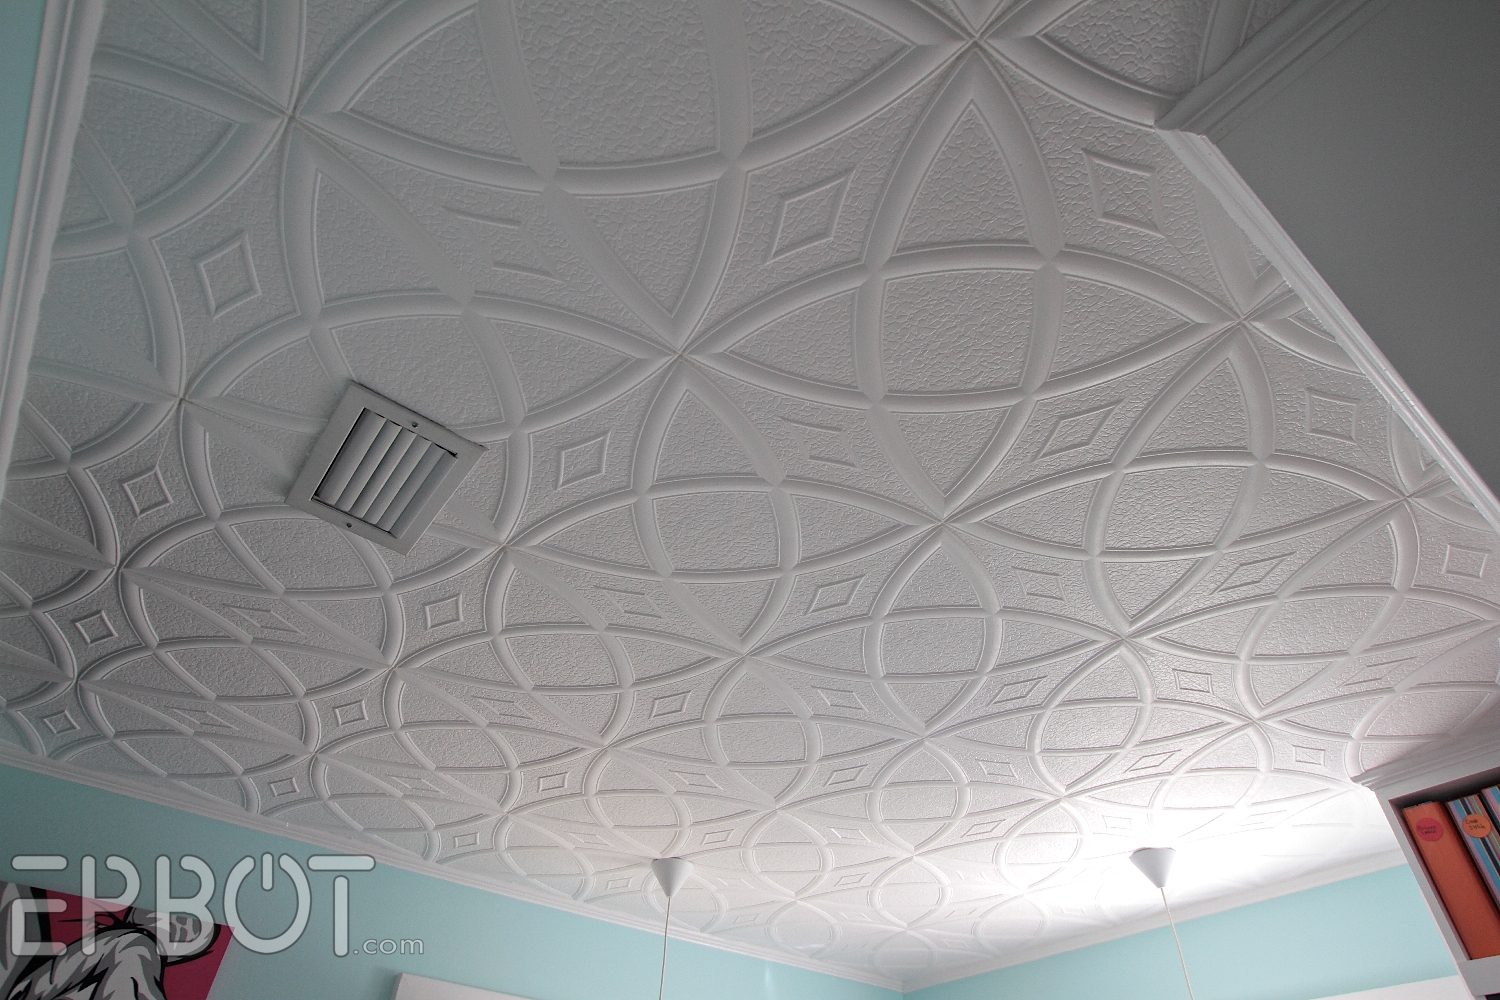 Adhesive For Styrofoam Ceiling Tilesstyrofoam ceiling tile glue ceiling tiles